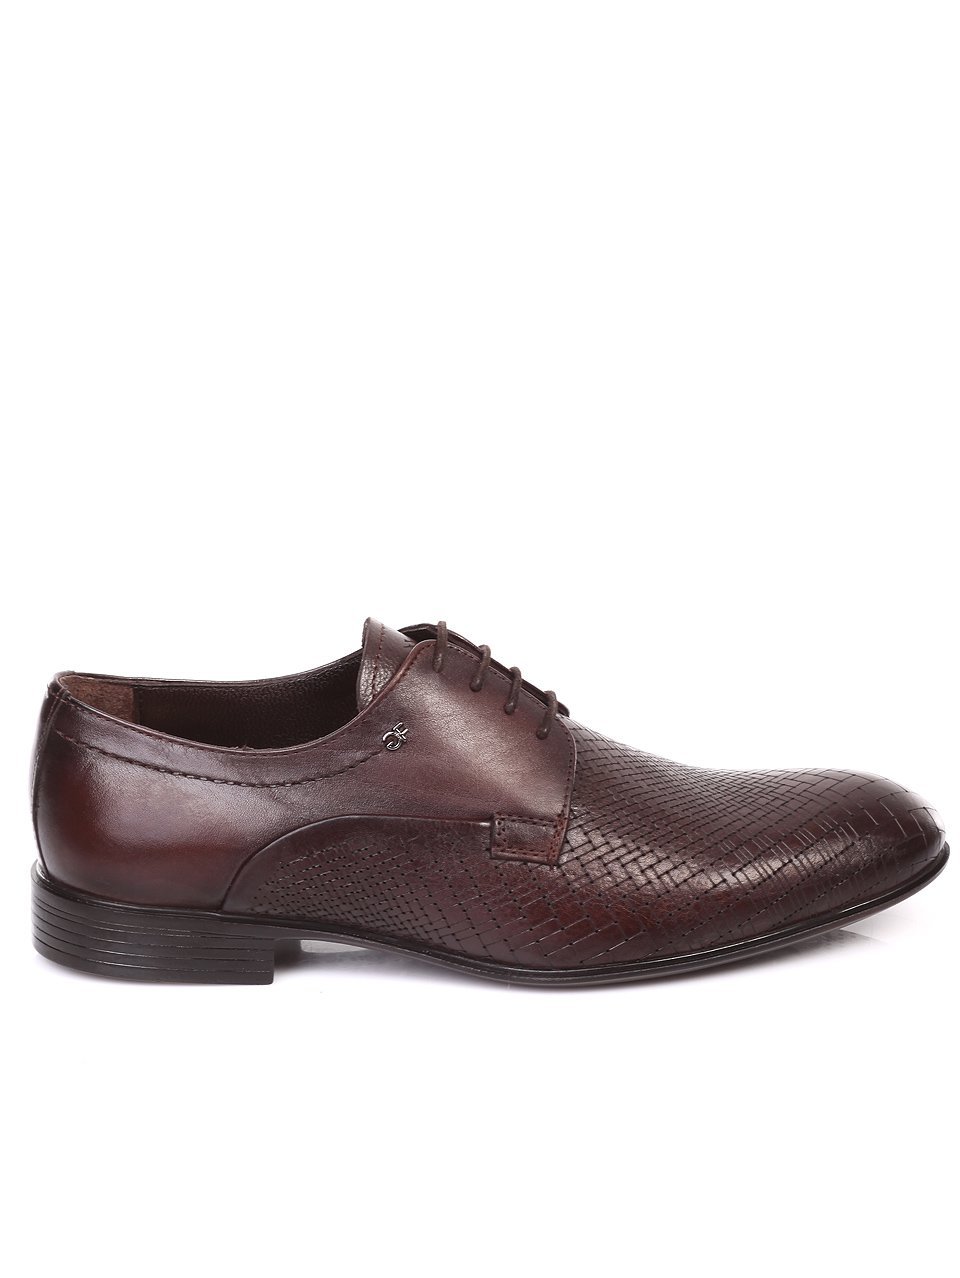 Елегантни мъжки обувки от естествена кожа 7AT-18519 brown